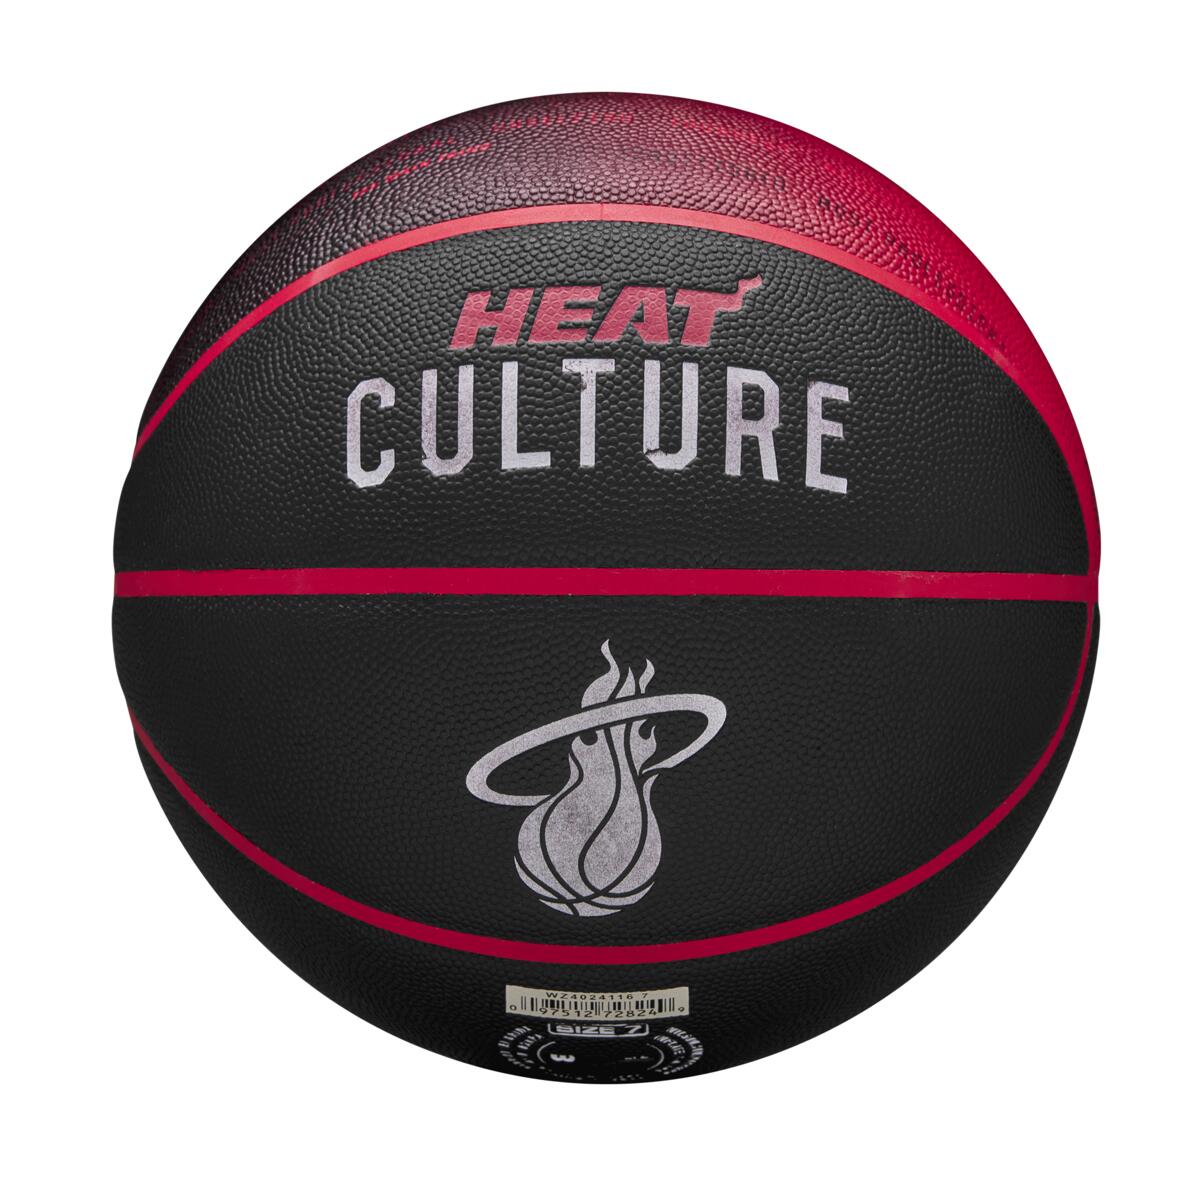 Wilson NBA Miami Heat City Collector Basketball